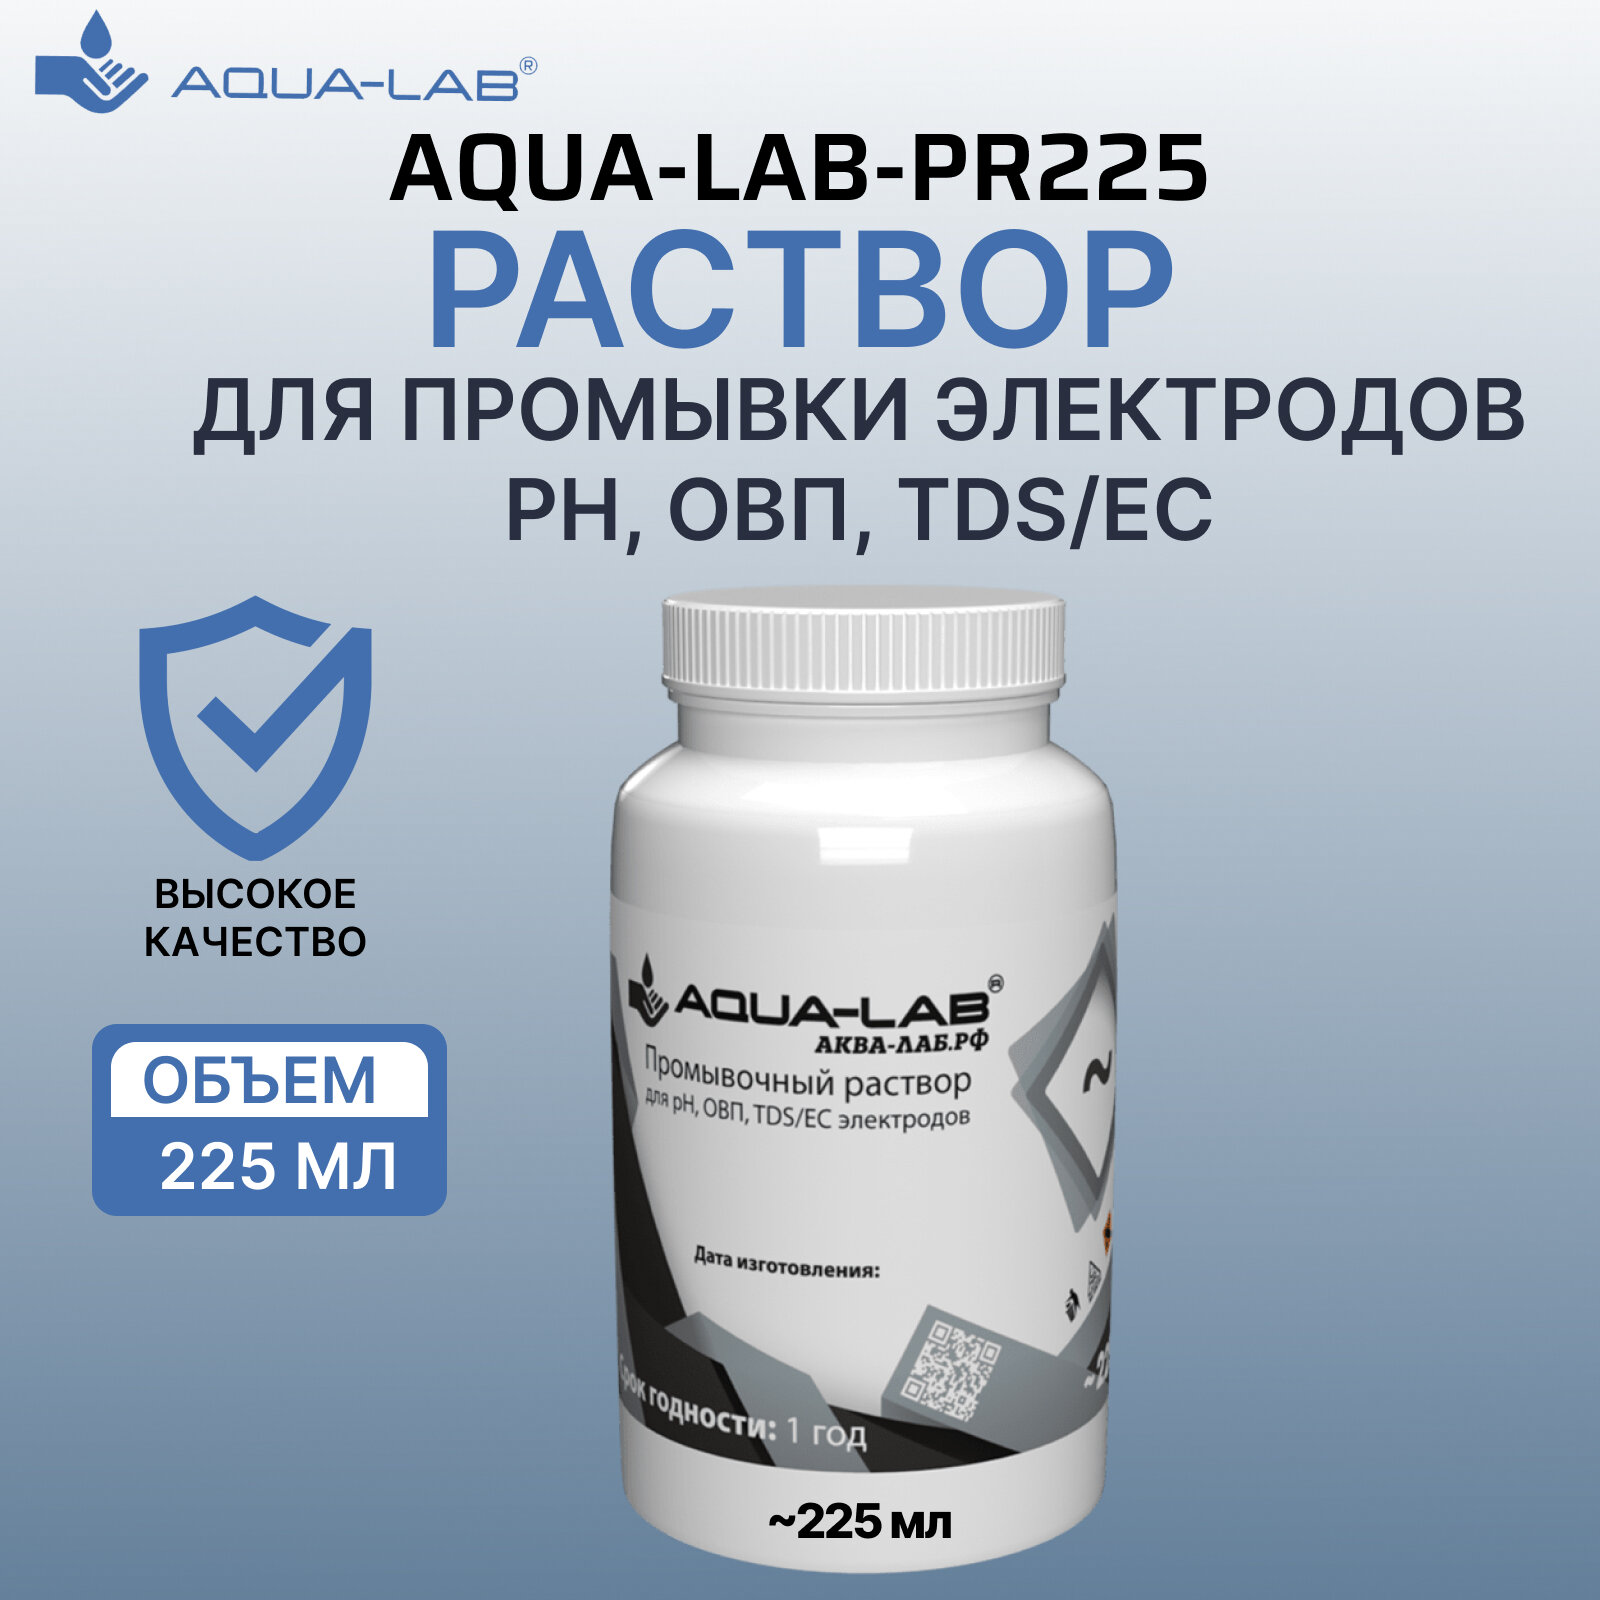 Раствор AQUA-LAB для промывки электродов pH, ОВП, TDS/EC 225 мл